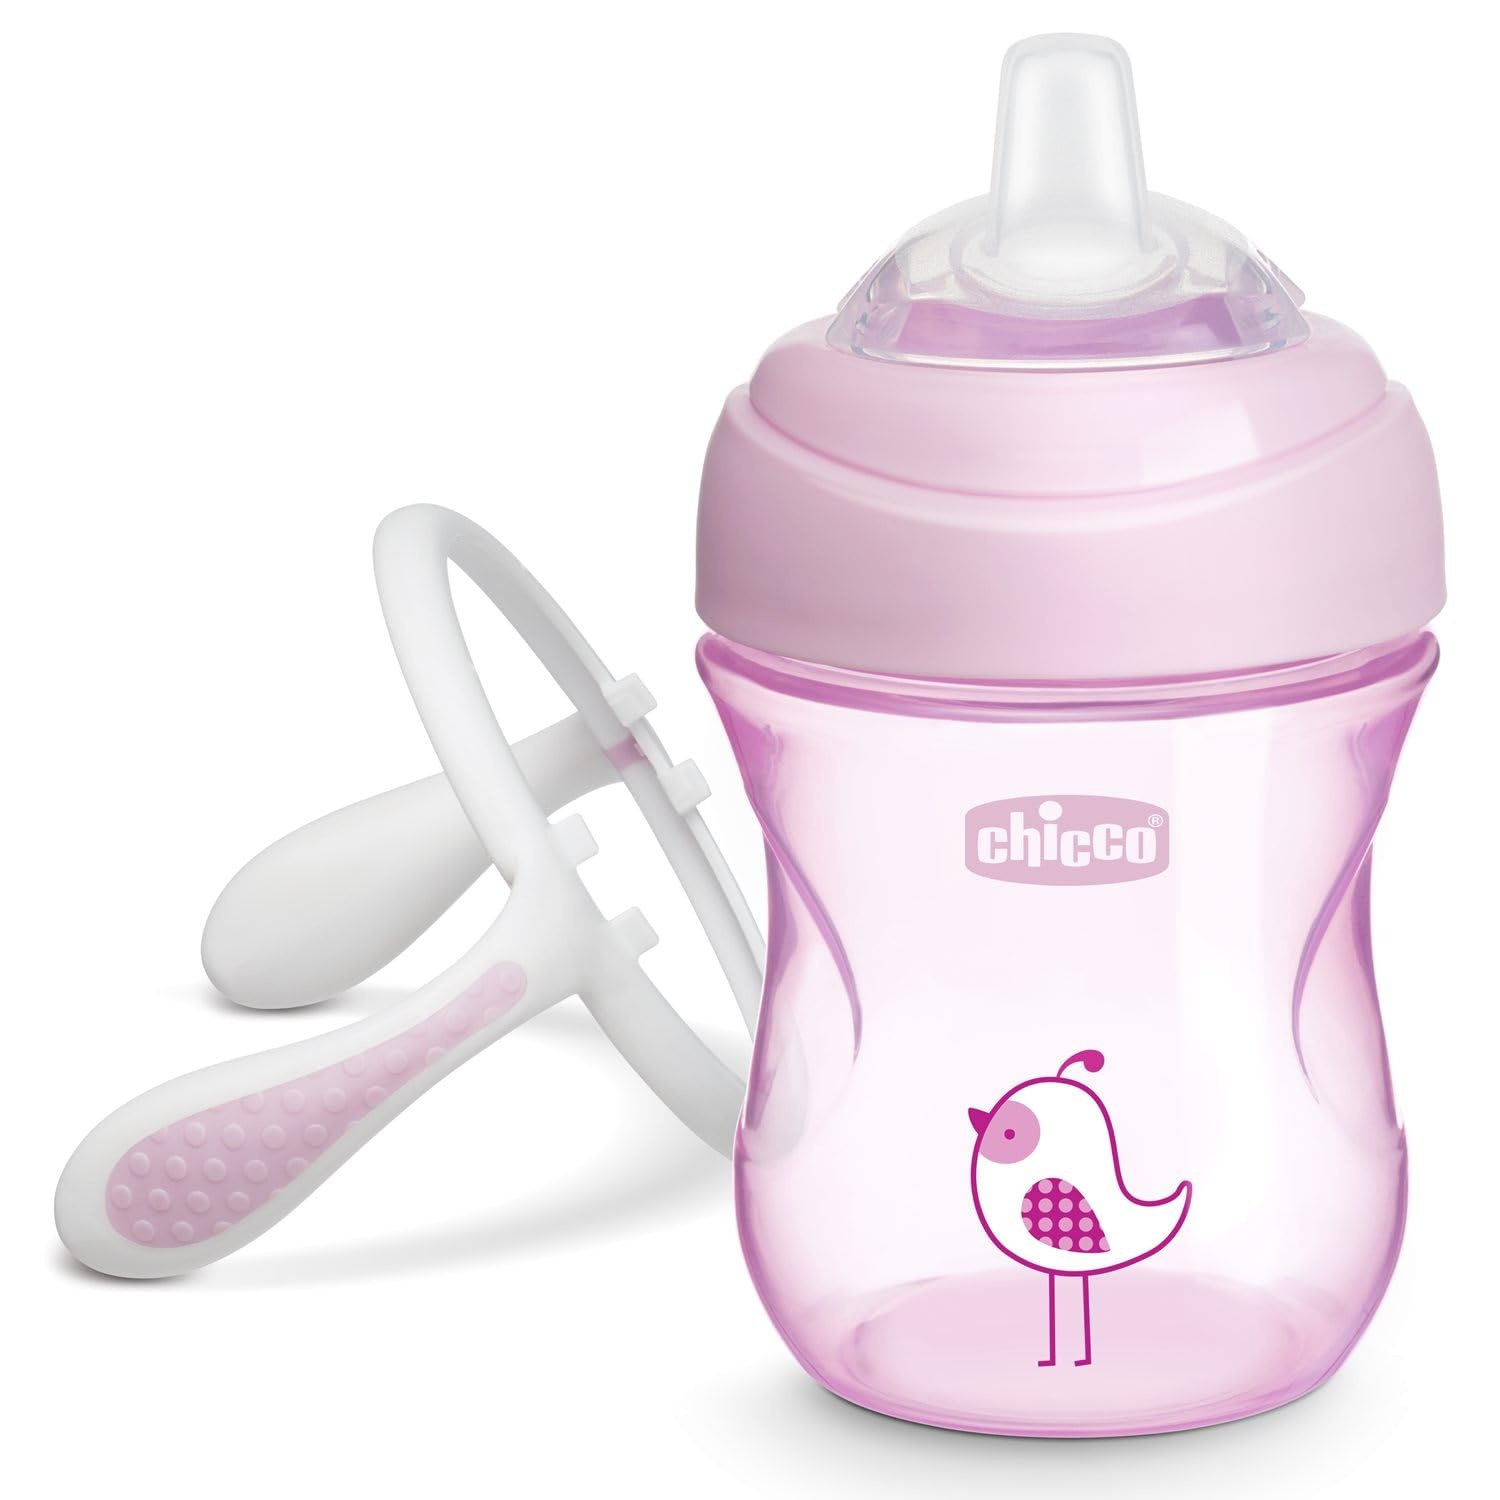 Chicco Trinklernbecher, auslaufsicherer 200ml Trinkbecher für Babys, Trinkflasche ab 4 Monaten zum Trinken lernen mit ergonomischer Silikontülle, doppeltes Anti-Kolik-Ventil, BPA-frei - Pink